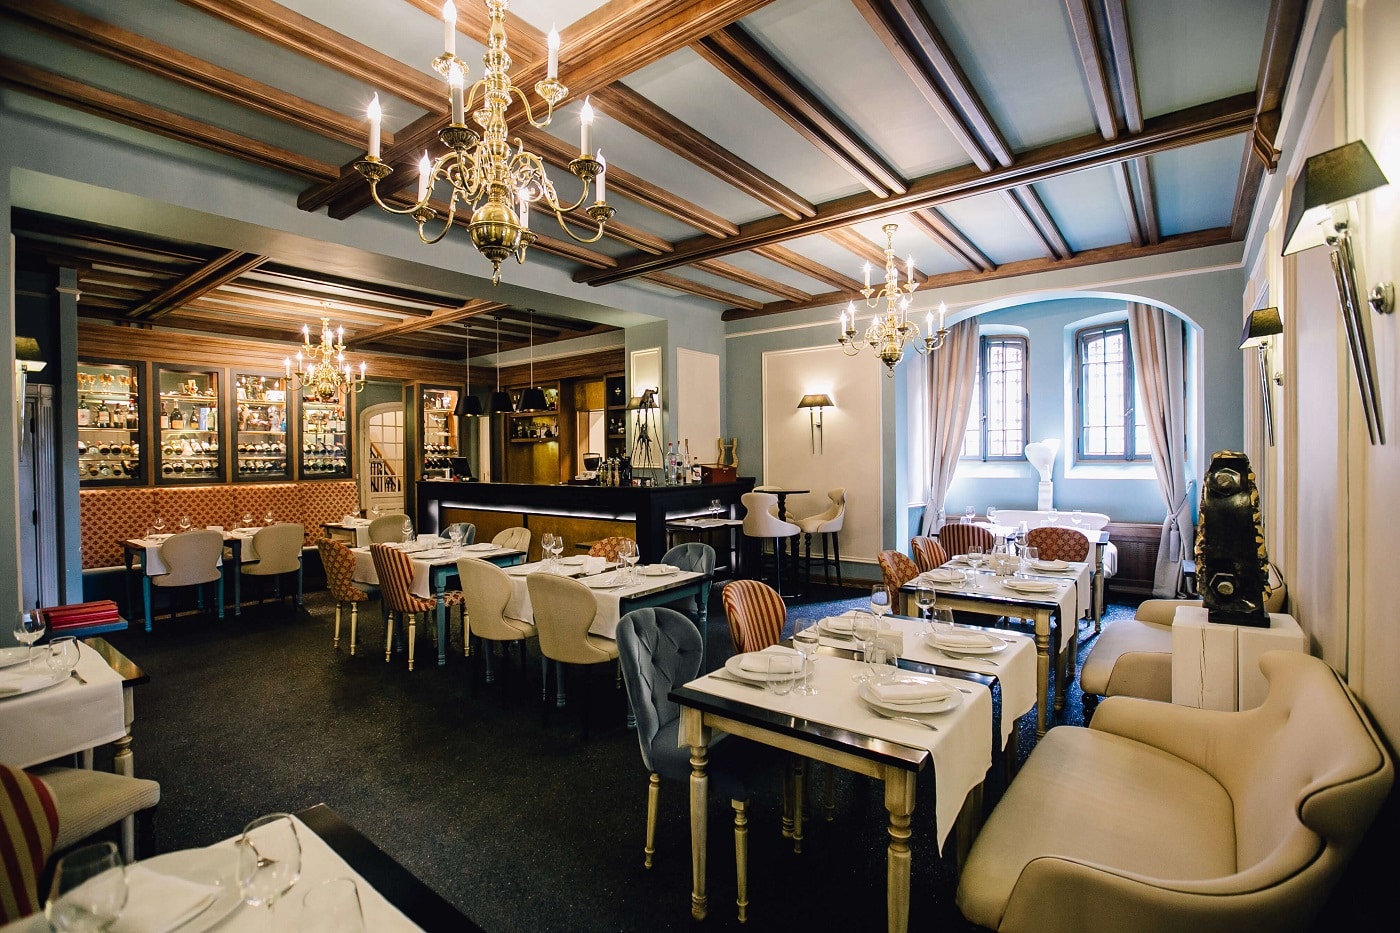 Restaurant Canta Cuisine decorat clasiv, elegant, cu mobilier clasix luxos si tavan cu barne din lemn, restaurant unde luăm masa în Bușteni